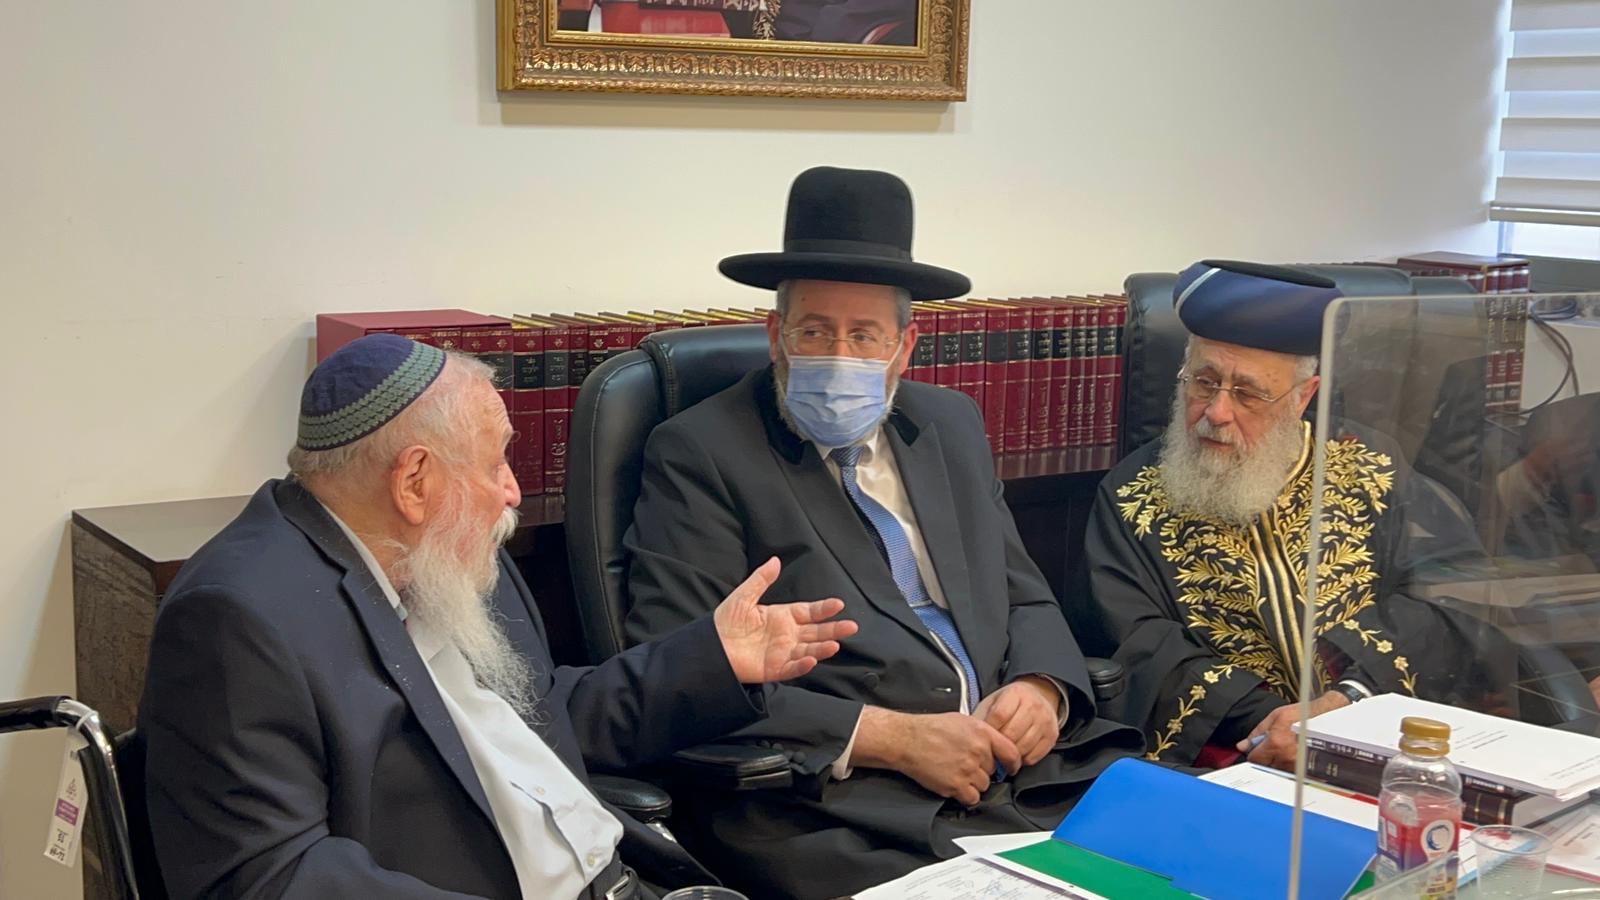 מועצת הרבנות הראשית בישיבה על ענייני הדת במדינת ישראל